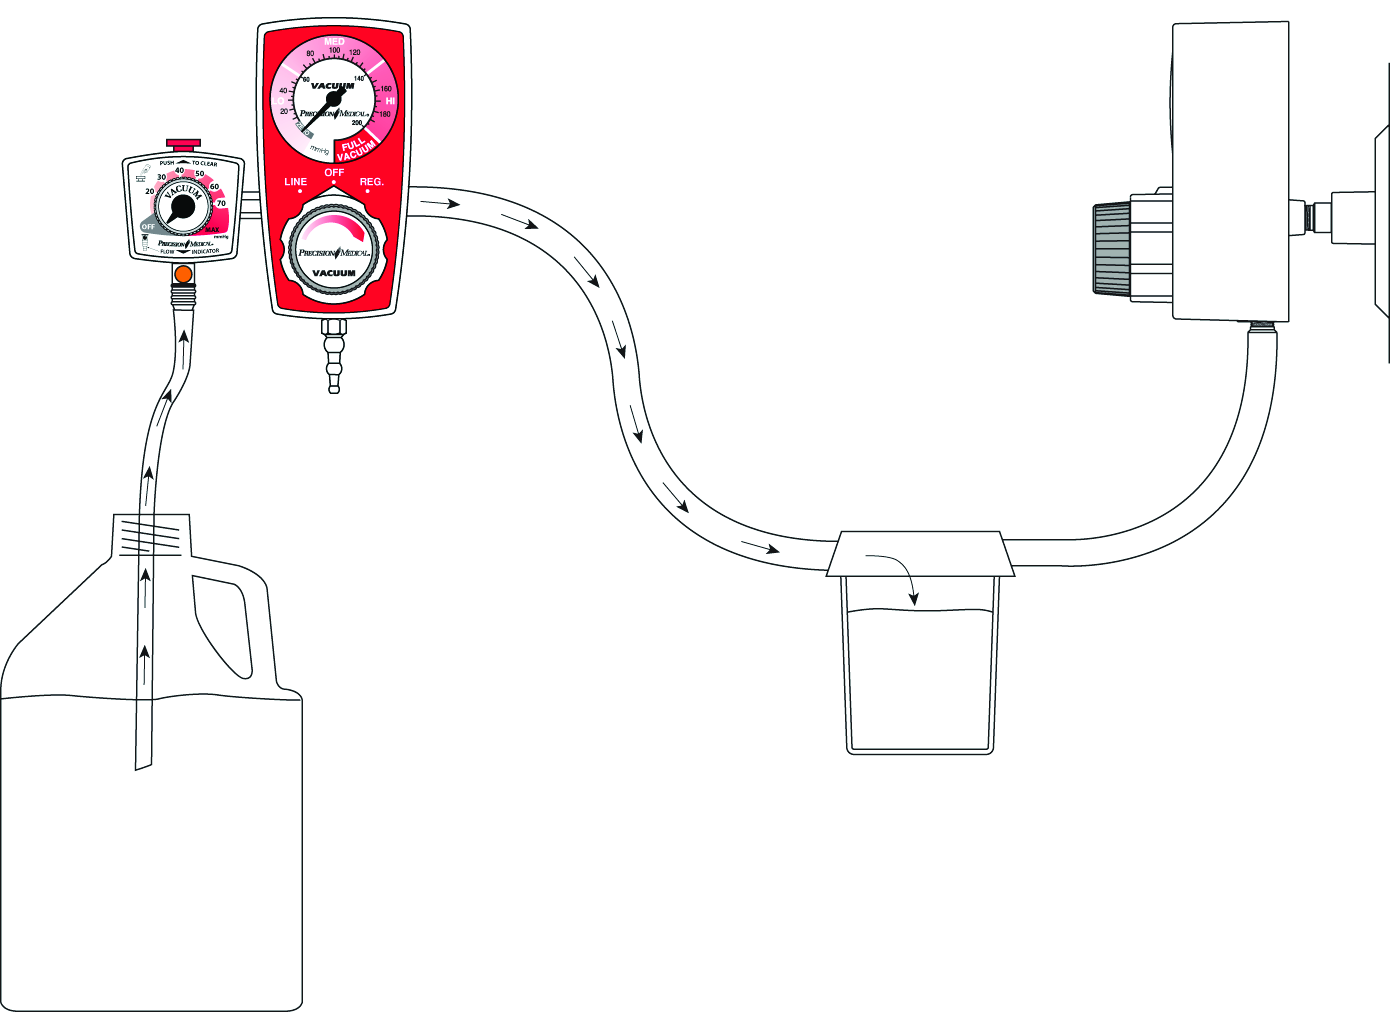 PULIZIA/decontaminazione (a seconda delle necessità) Regolatore di PM9100 Regolatore di vuoto Regolatore di vuoto funzionante (impostato su 200 mmhg) Tubo di collegato al raccordo del regolatore